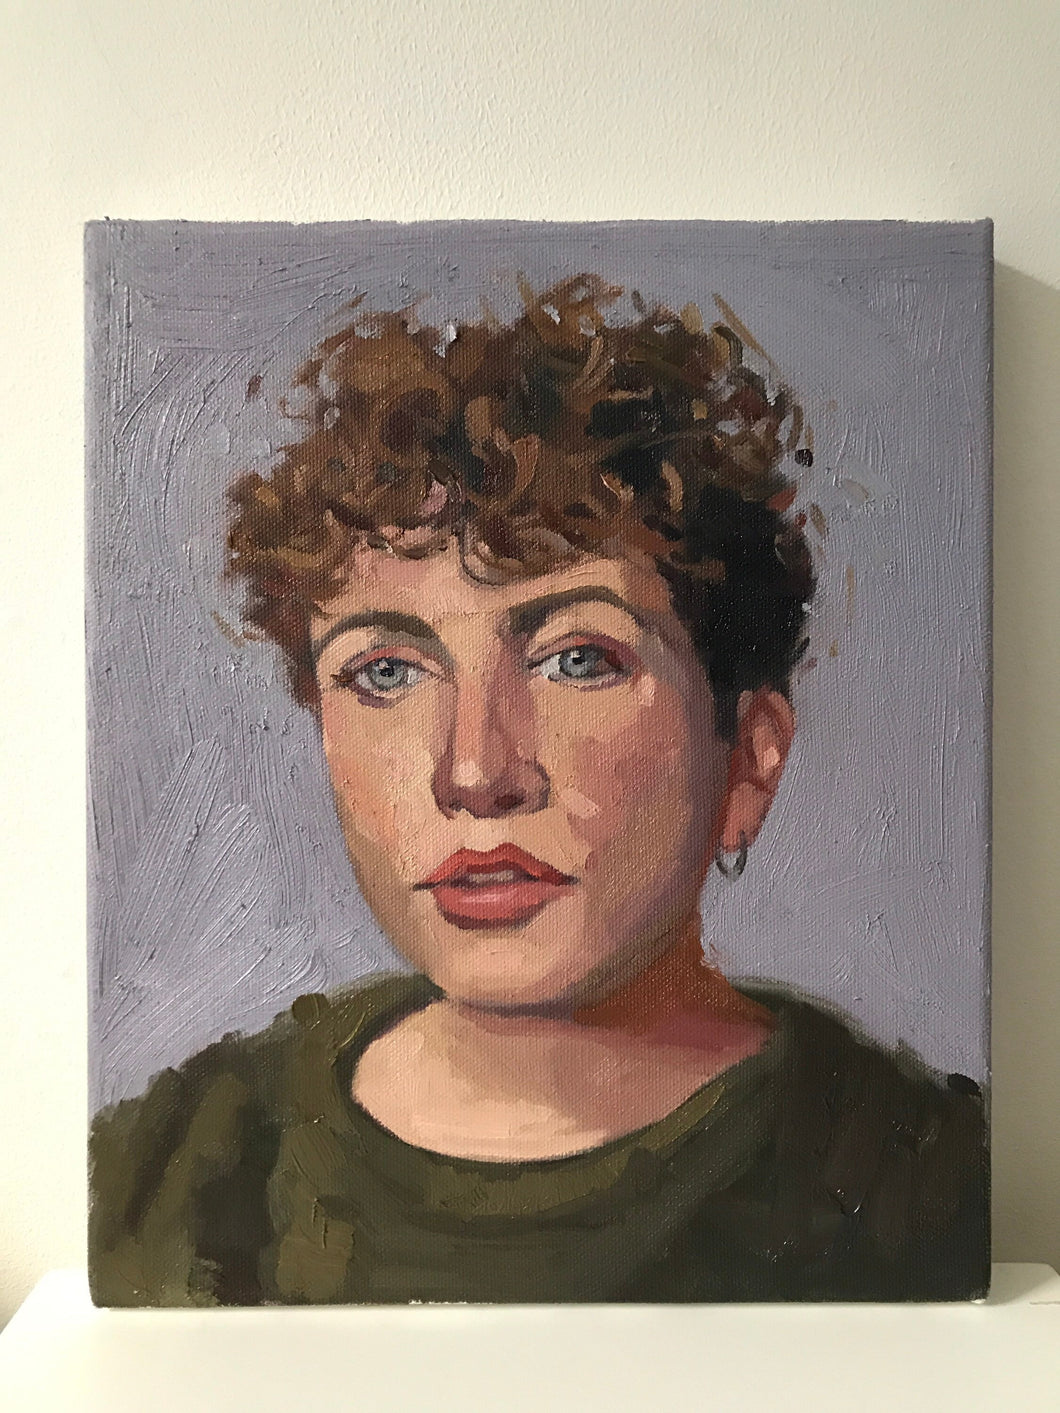 Allaprima portrait painting oil on canvas female portrait figurative art Annie Mac portrait